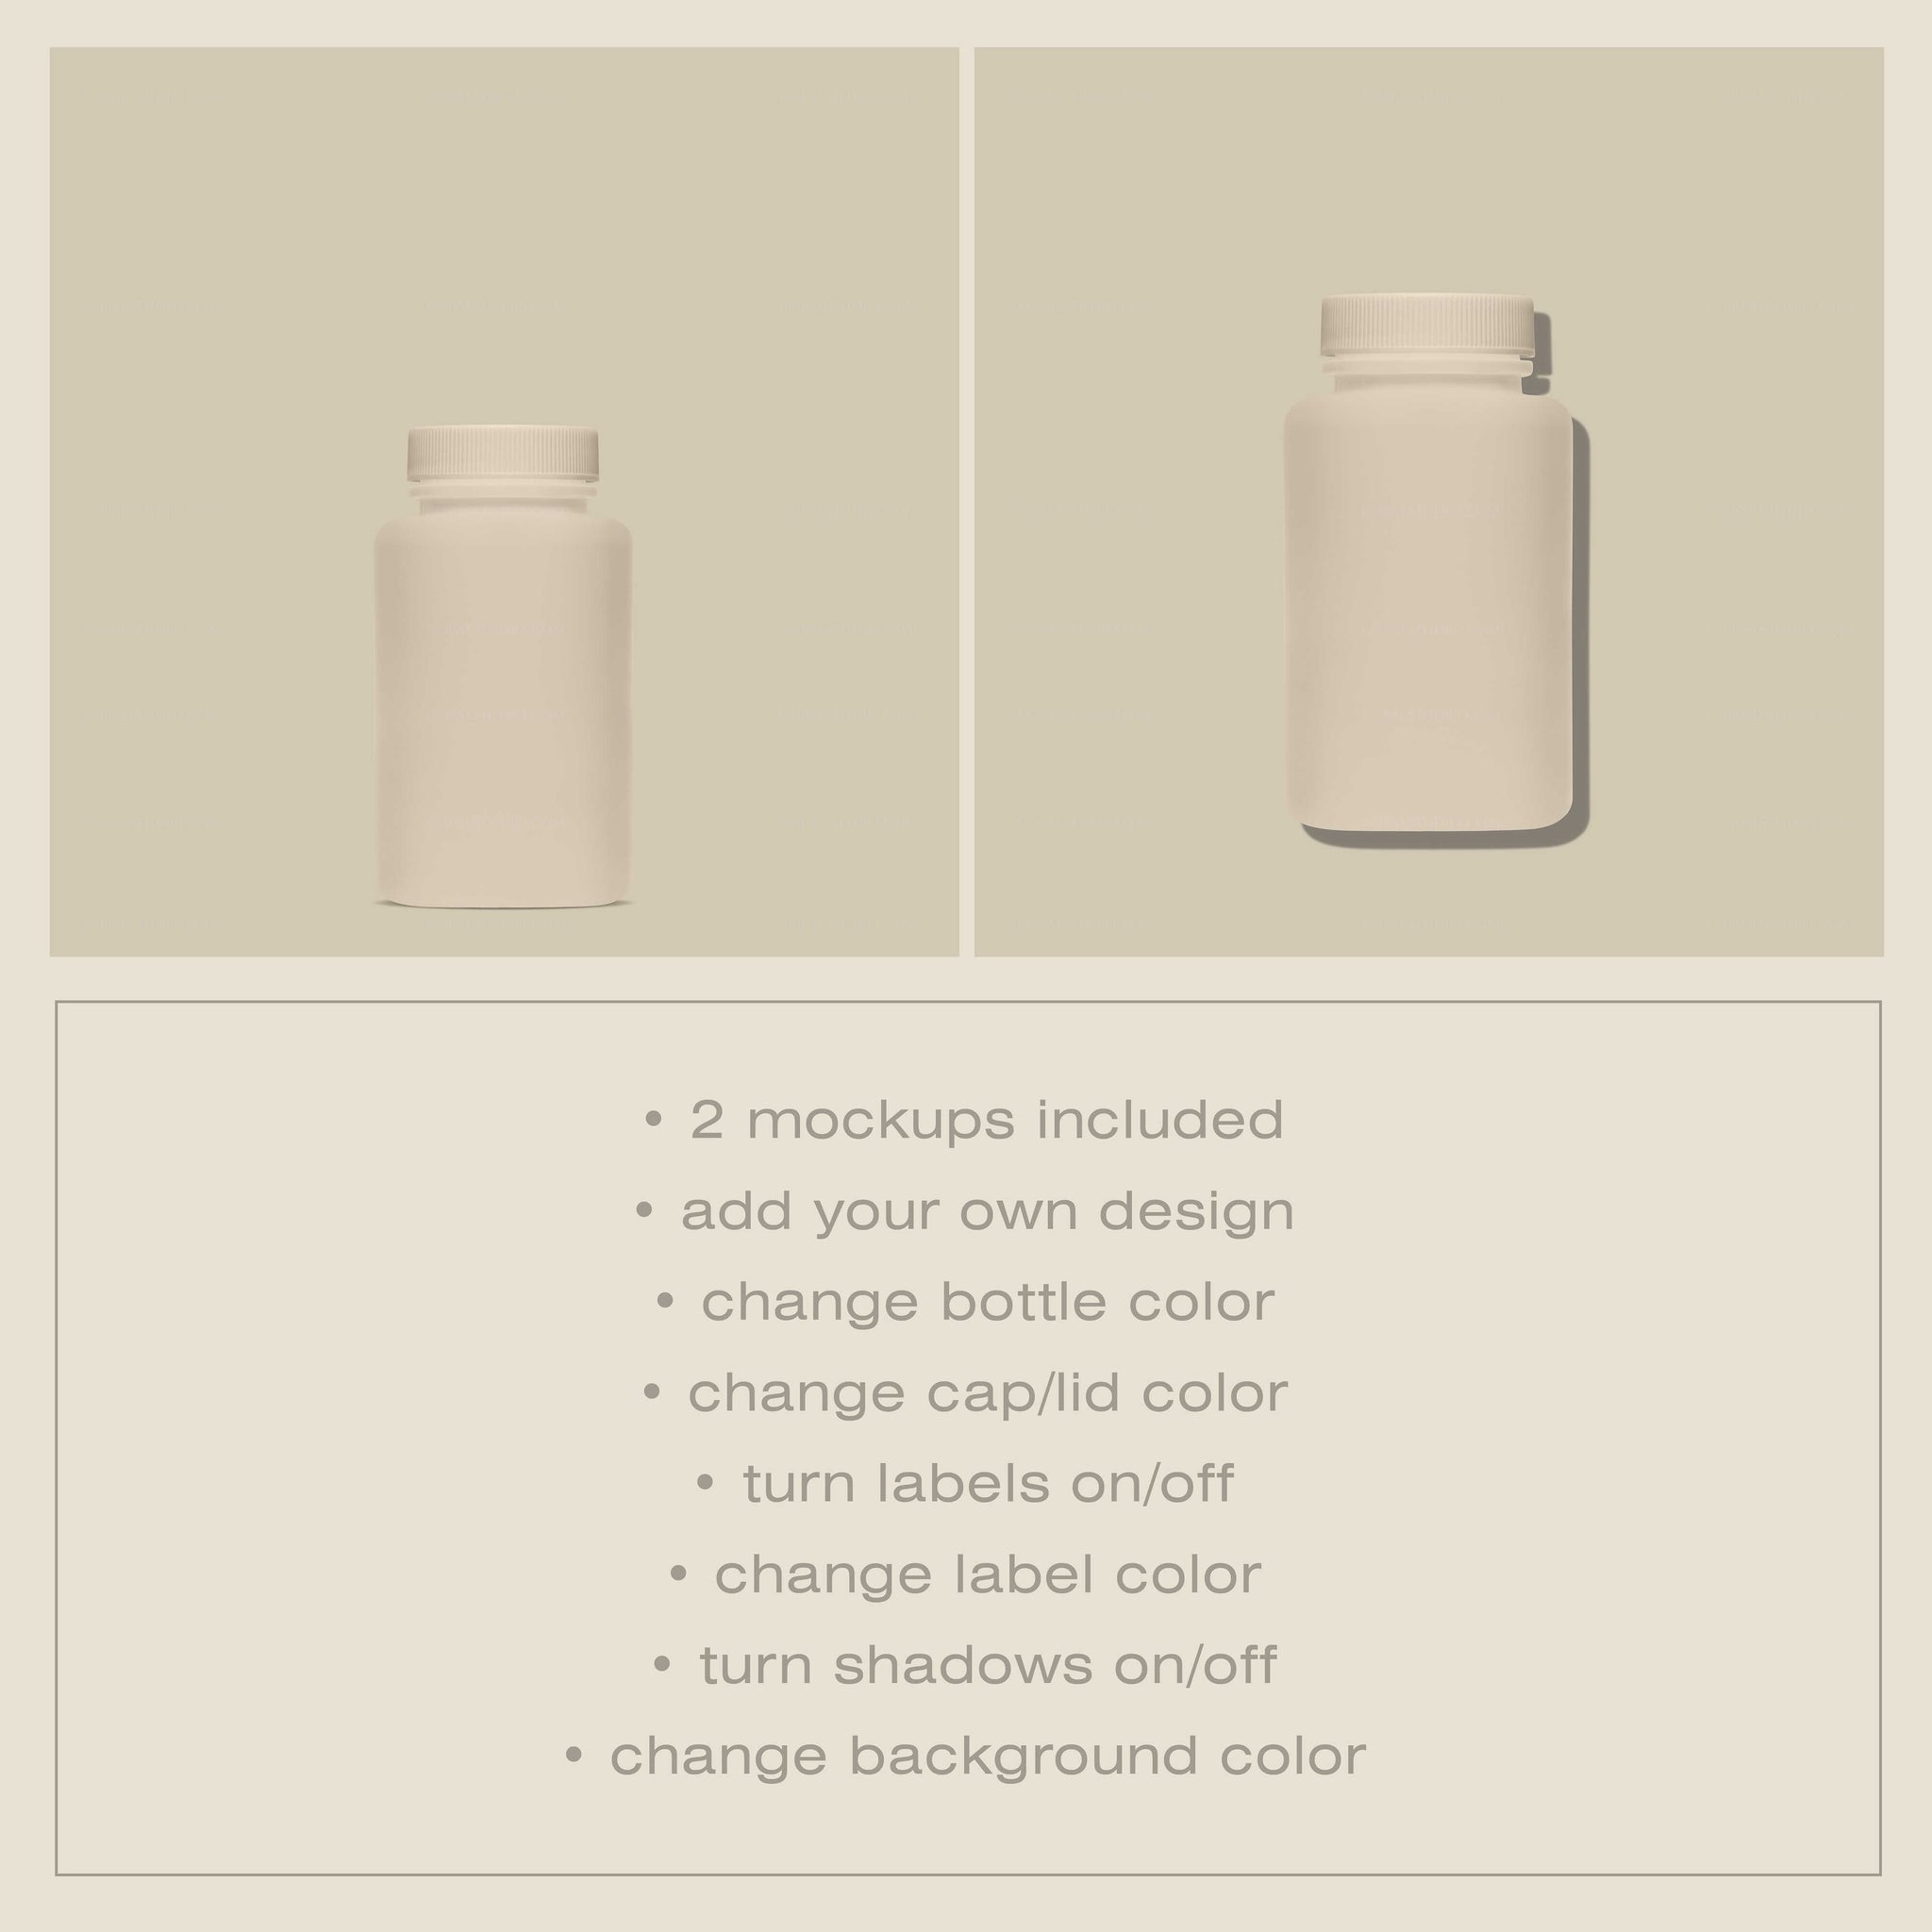 Vitamin Bottle Mockup No. 11 - Copal Studio Packaging Mockups For Designers